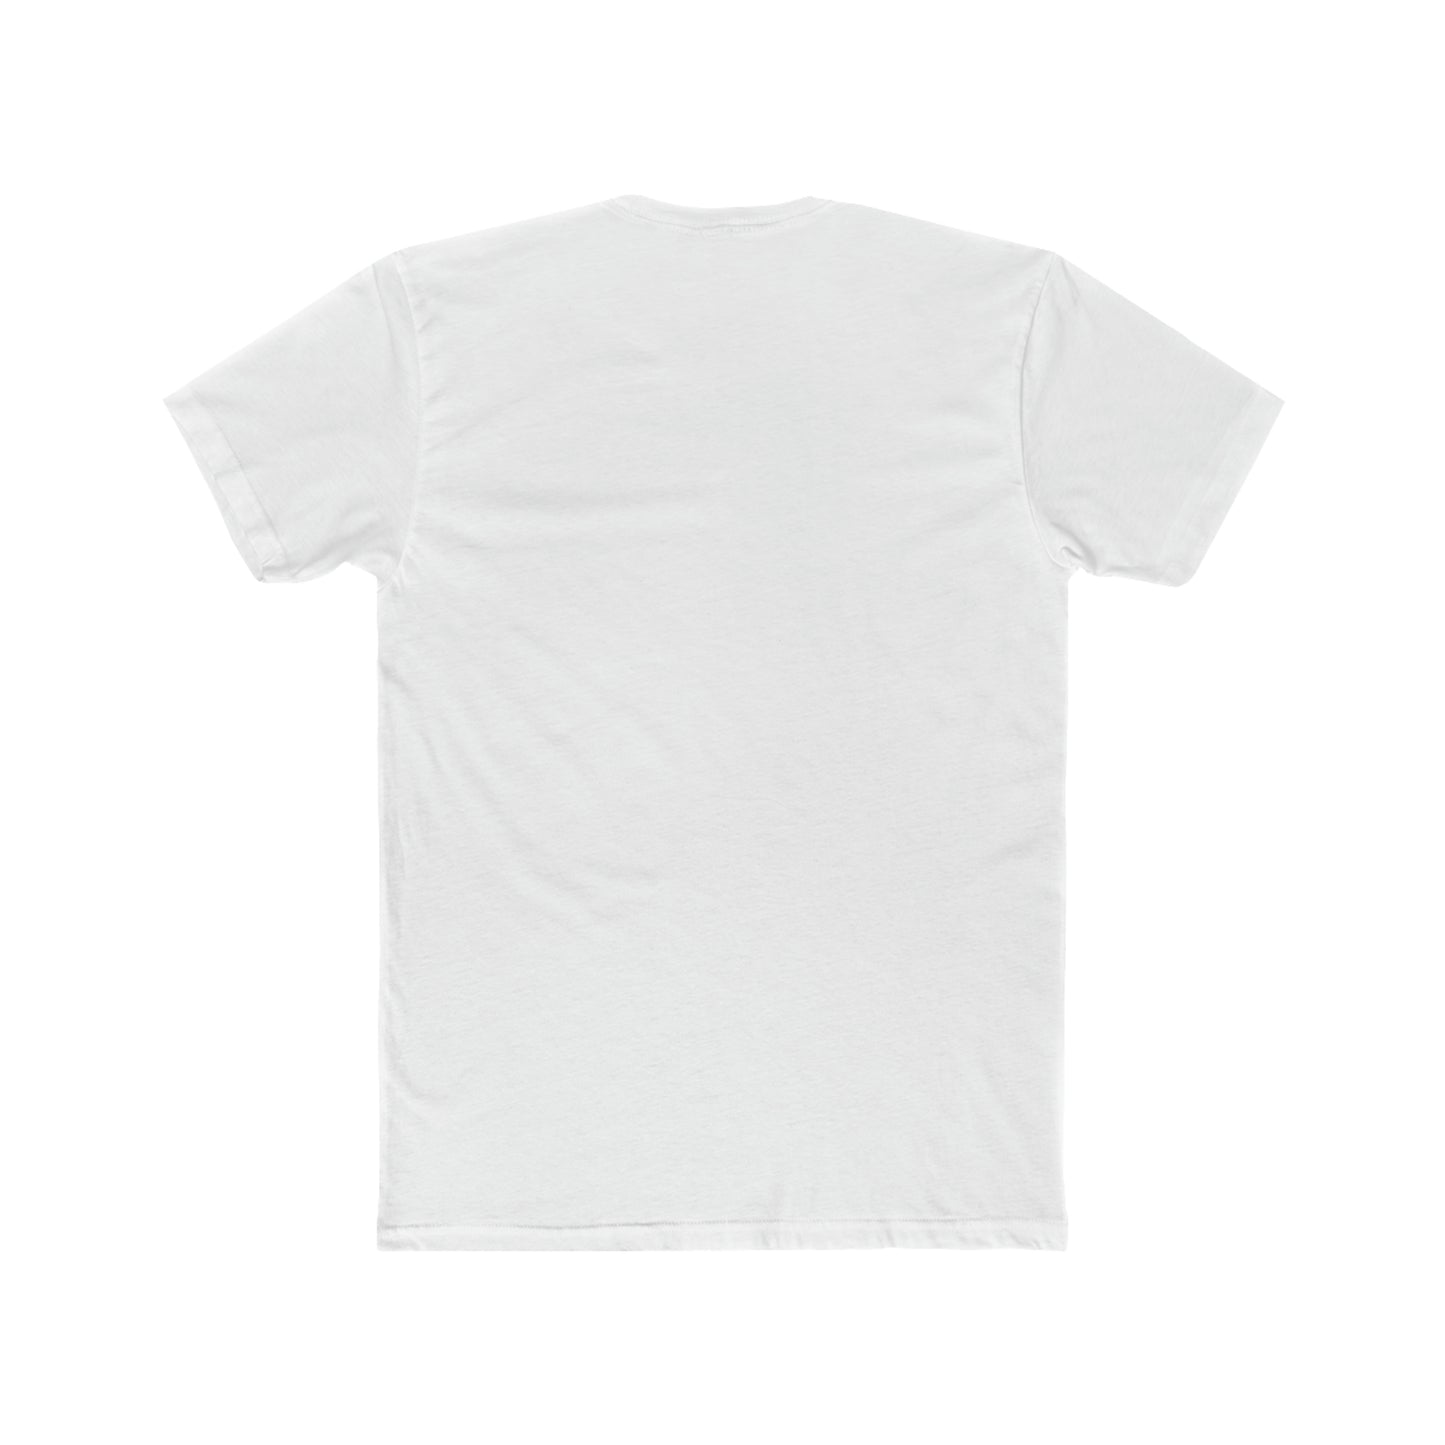 FPR T-Shirt